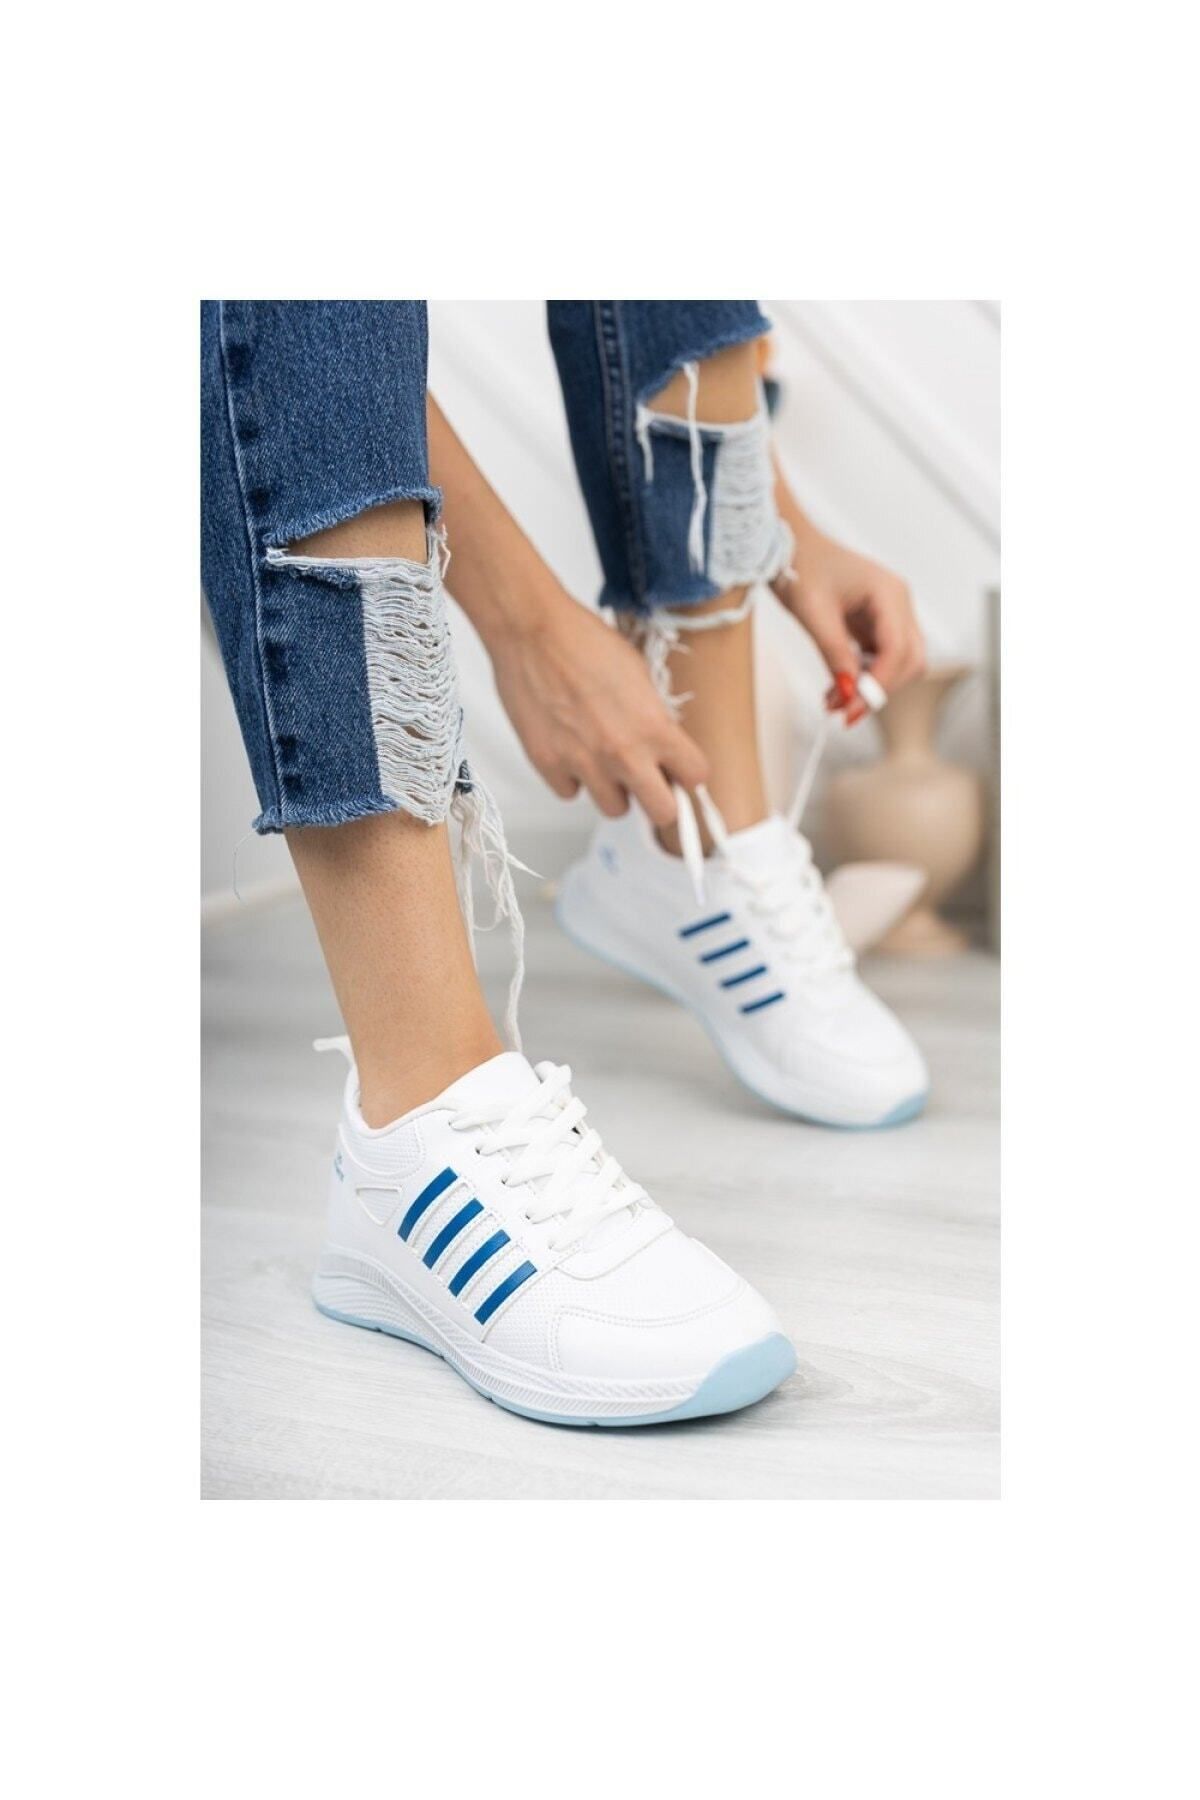 infinite8 Infinite Kadın Erkek Günlük Genç Sneaker, Ortopedikyürüyüş Ayakkabısı Beyaz Mavi